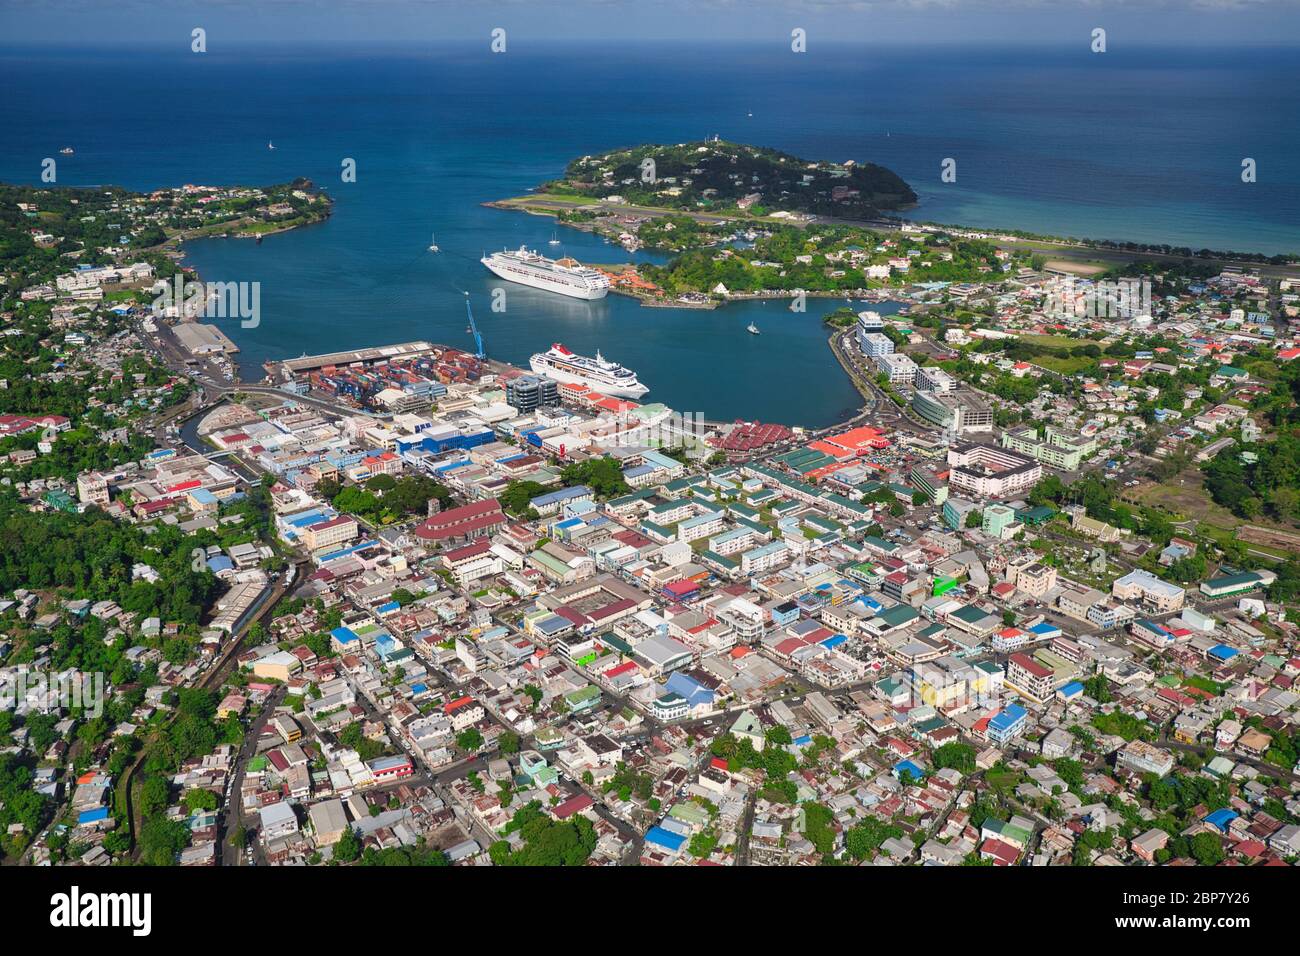 Luftaufnahme vom Hubschrauber aus von Castries, dem Haupthafen und Hauptstadt der Insel St. Lucia in der Karibik, Westindien. Der kleine Flughafen befindet sich oben rechts Stockfoto